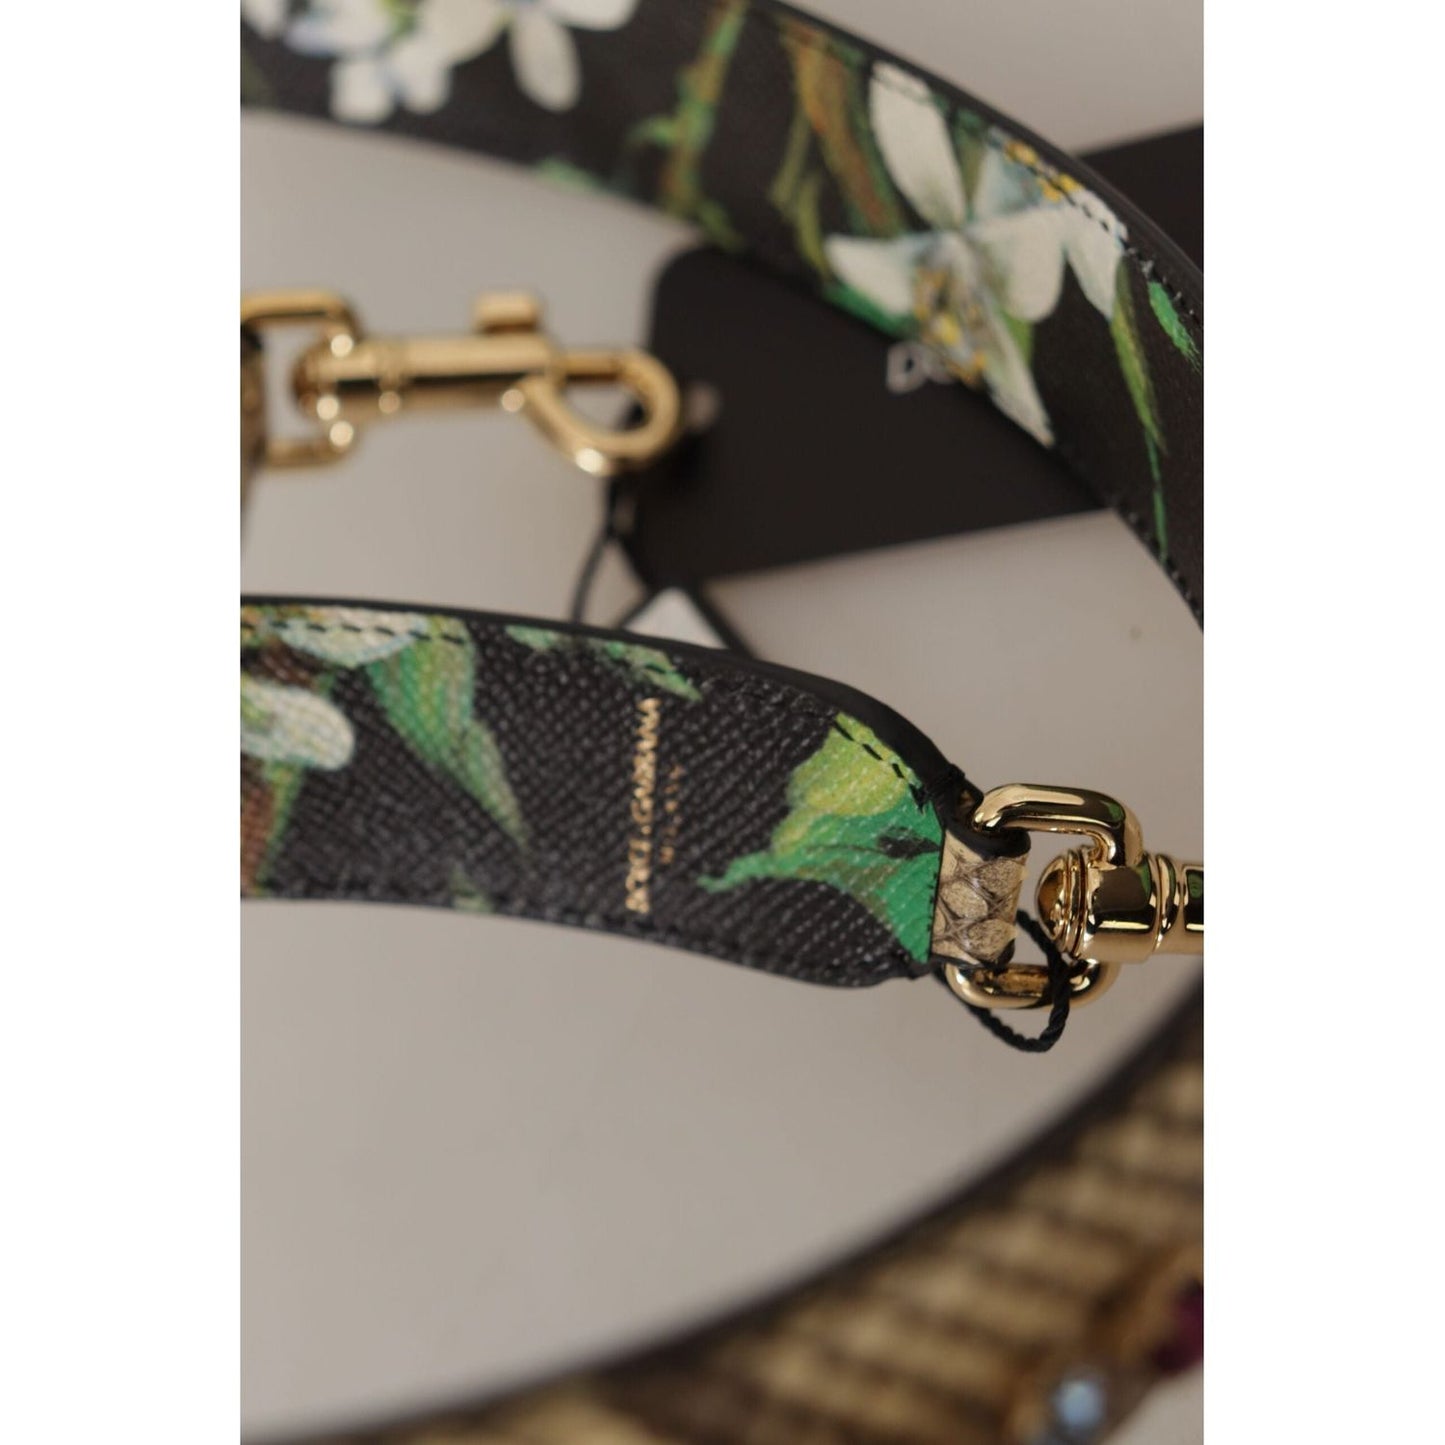 Dolce & Gabbana Elegant Beige Python Leather Shoulder Strap beige-exotic-leather-crystals-reversible-shoulder-strap IMG_0062-2-scaled-a846c823-e72.jpg